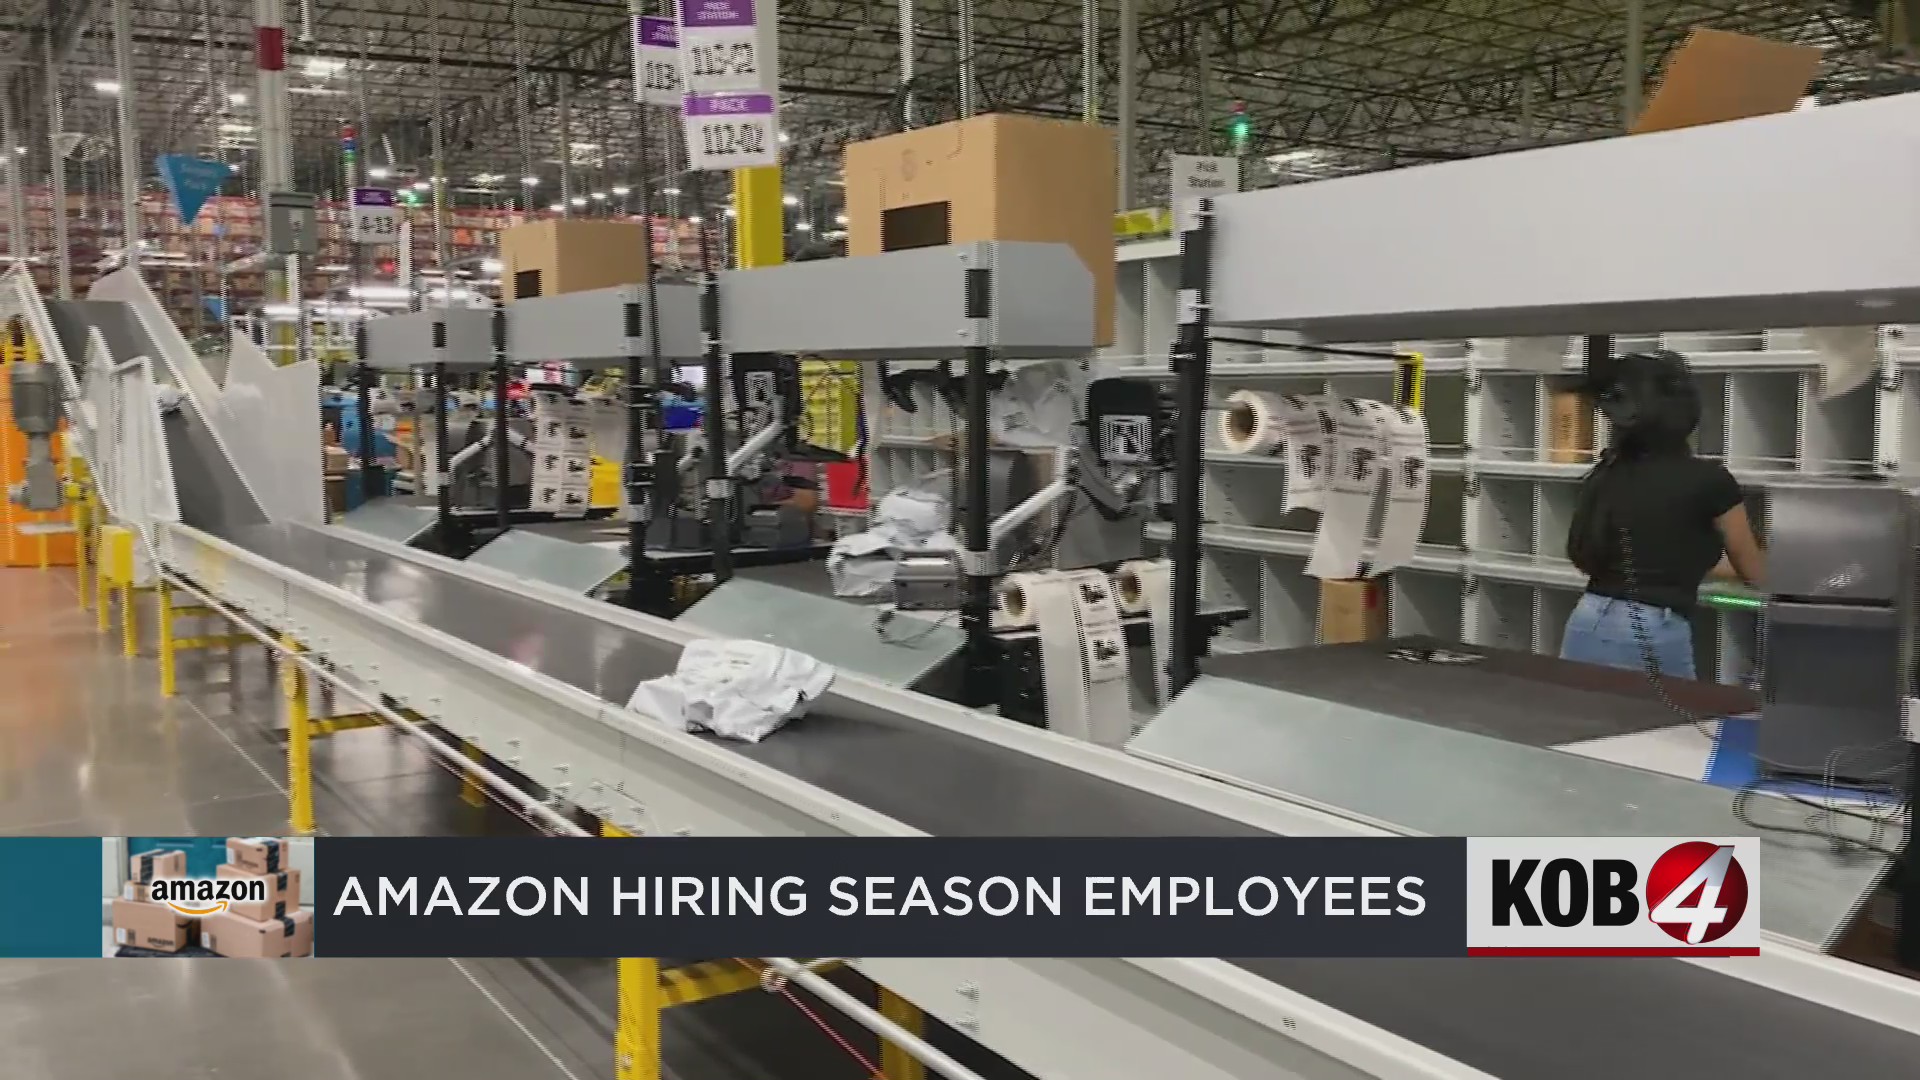 Amazon planea contratar 1,600 nuevos mexicanos para la temporada navideña